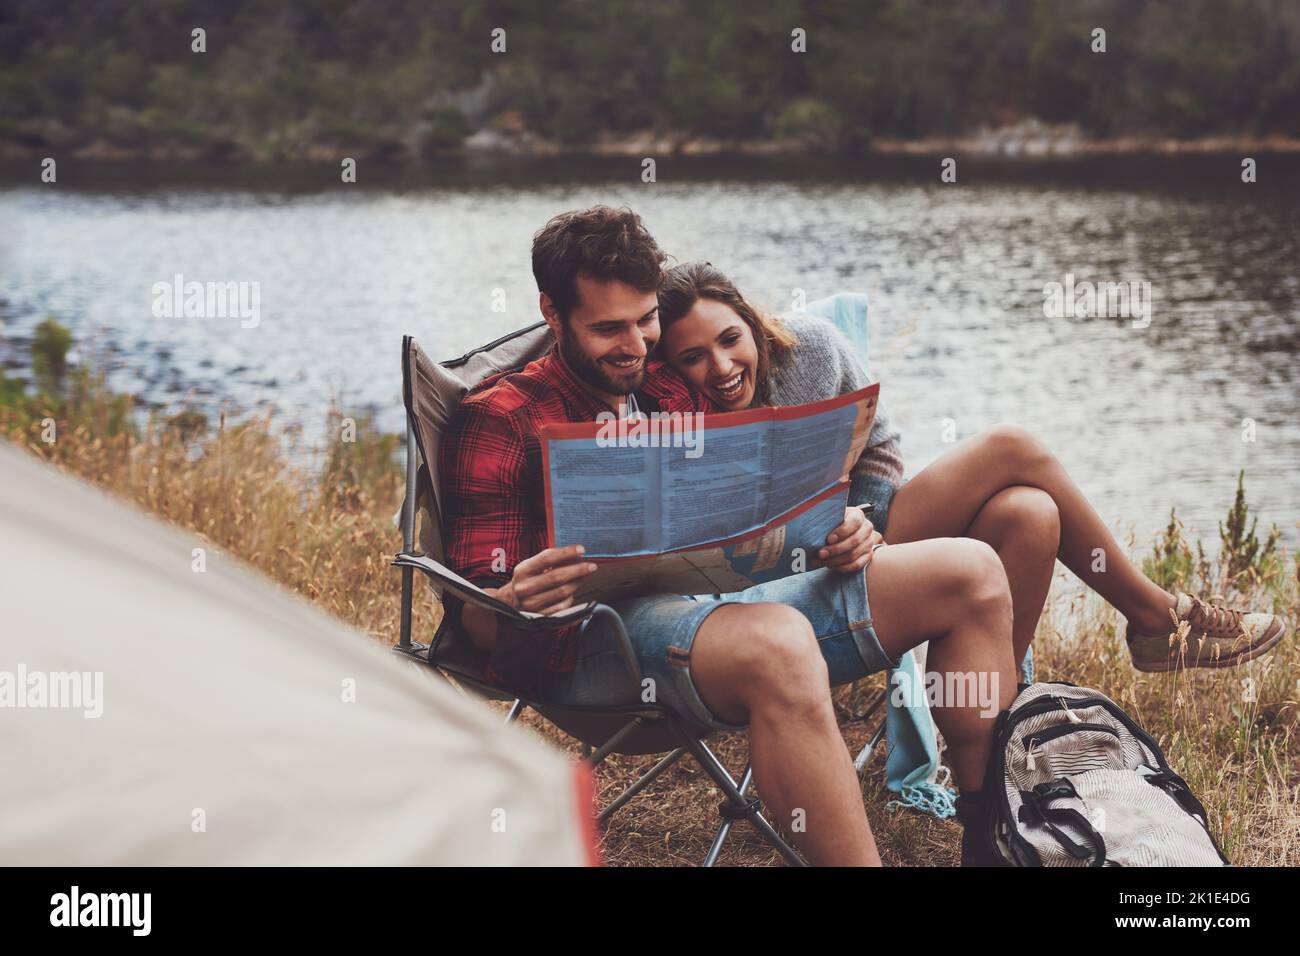 Abenteuerlustiges junges Paar, das sich einen Stadtplan anschaut, während es draußen auf Campingstühlen sitzt. Romantisches junges Paar Camping am See. Stockfoto